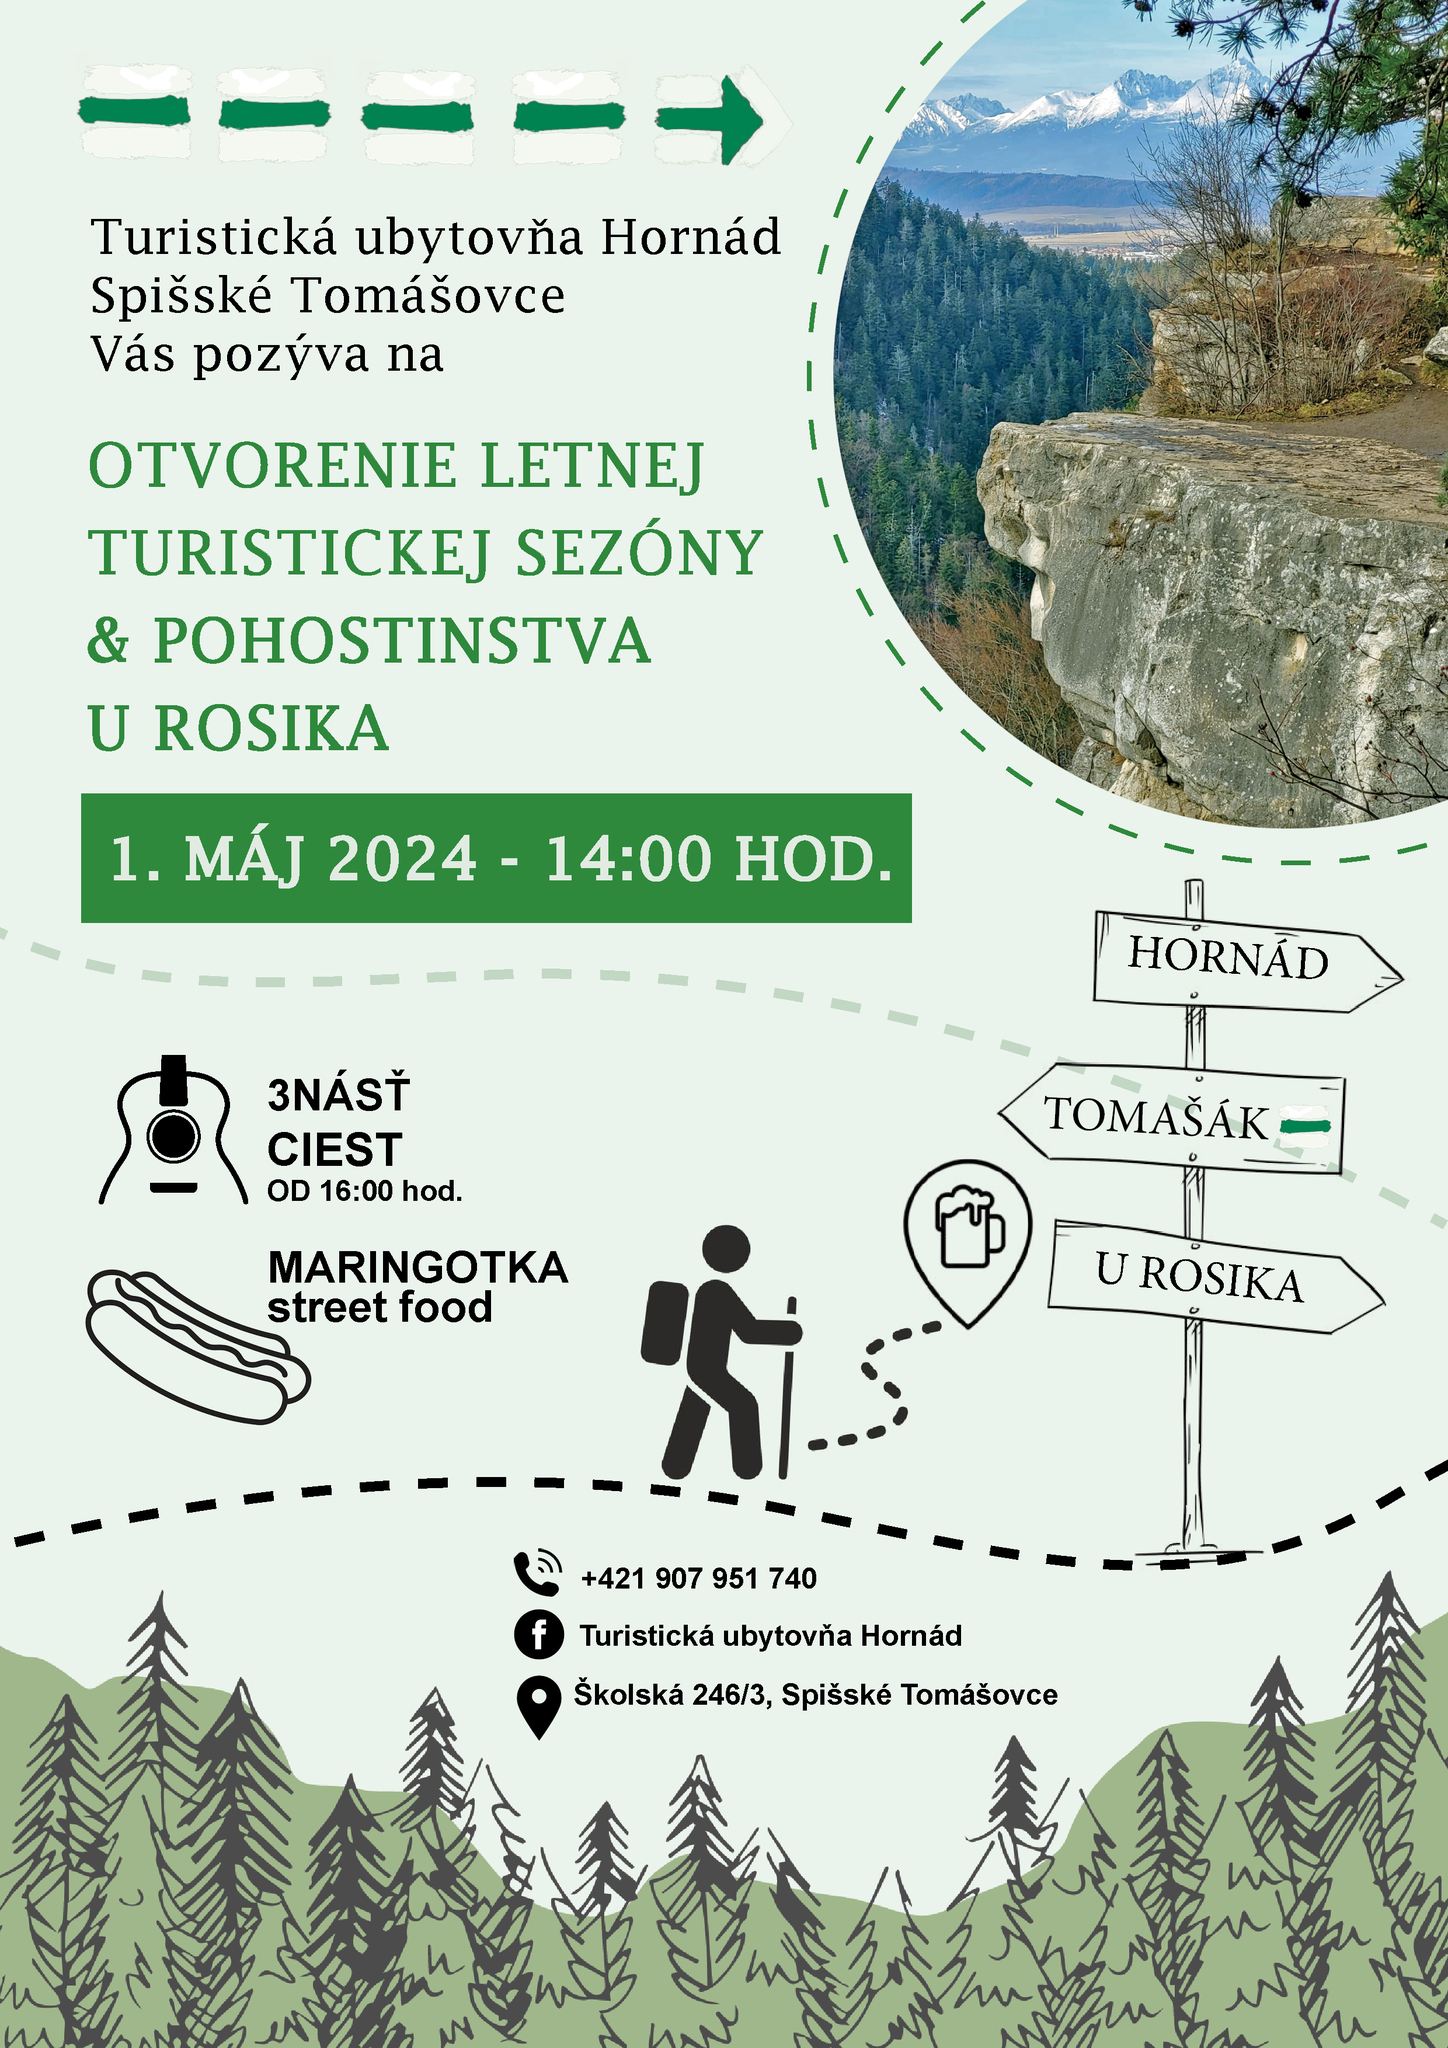 Otvorenie letnej turistickej sezóny Spišské Tomášovce